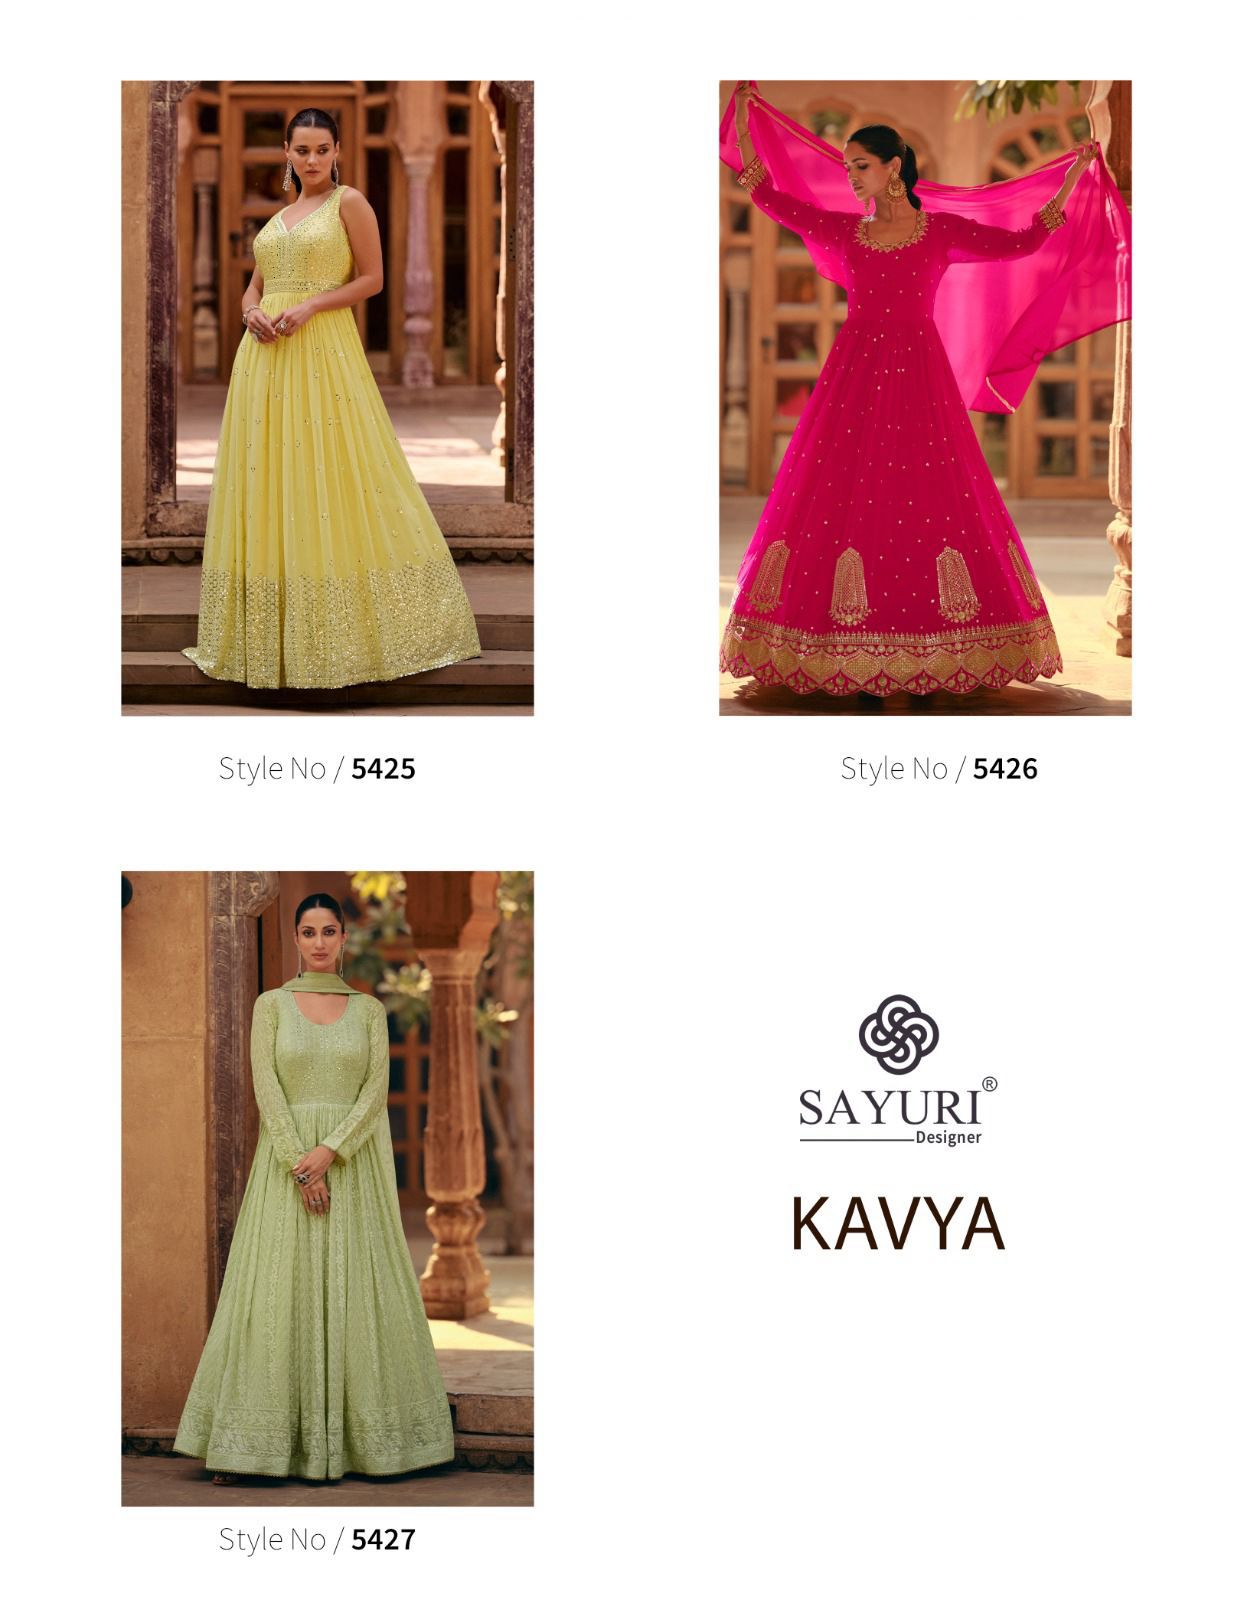 Sayuri Kavya collection 1